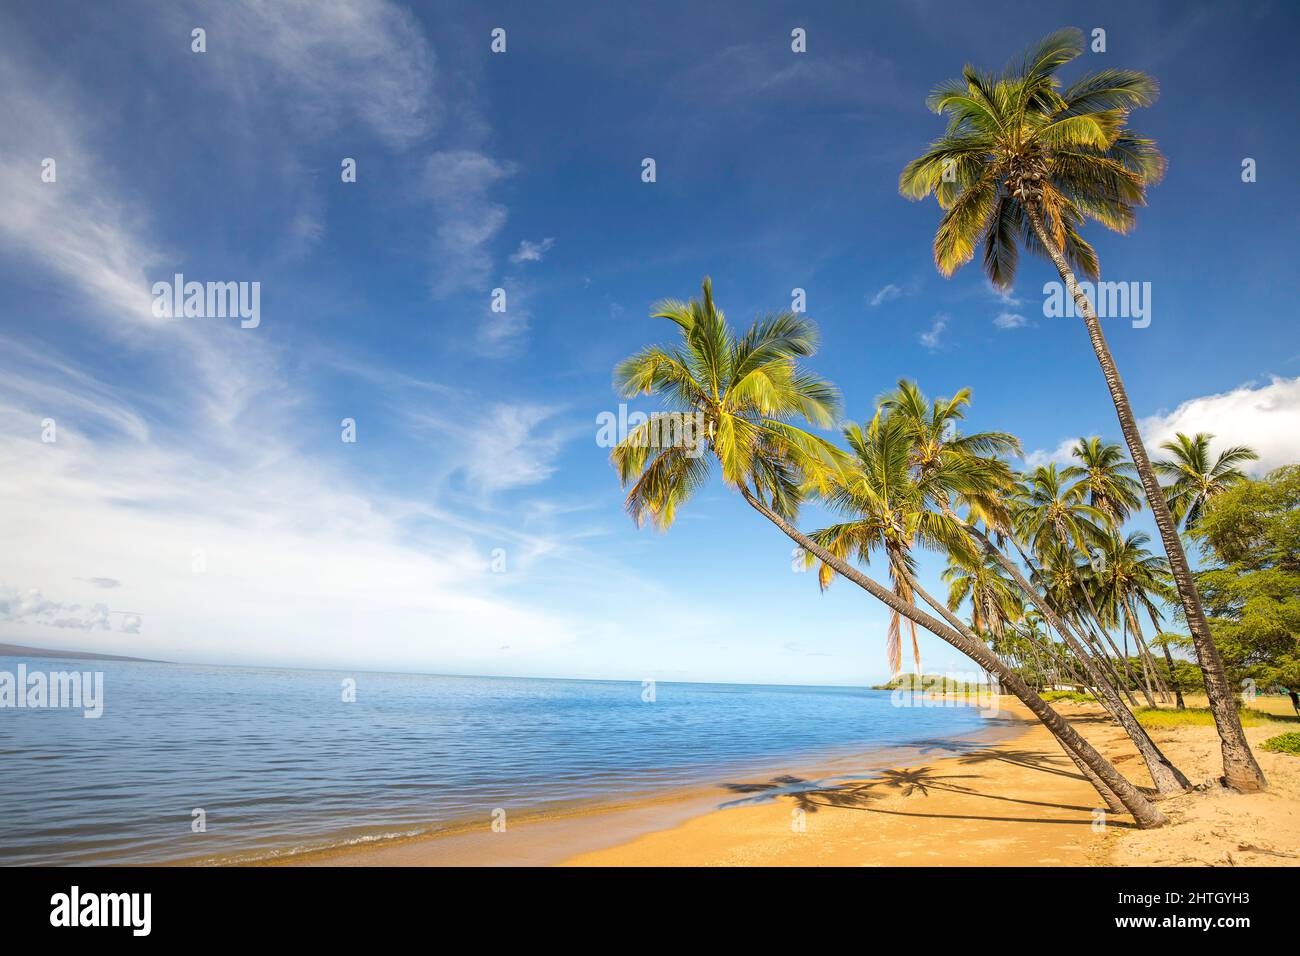 Einen Sandstrand, ruhige Strand und Palmen an Kakahaia Beach Park, Insel Molokai, Hawaii, Vereinigte Staaten von Amerika, Pazifik. Stockfoto